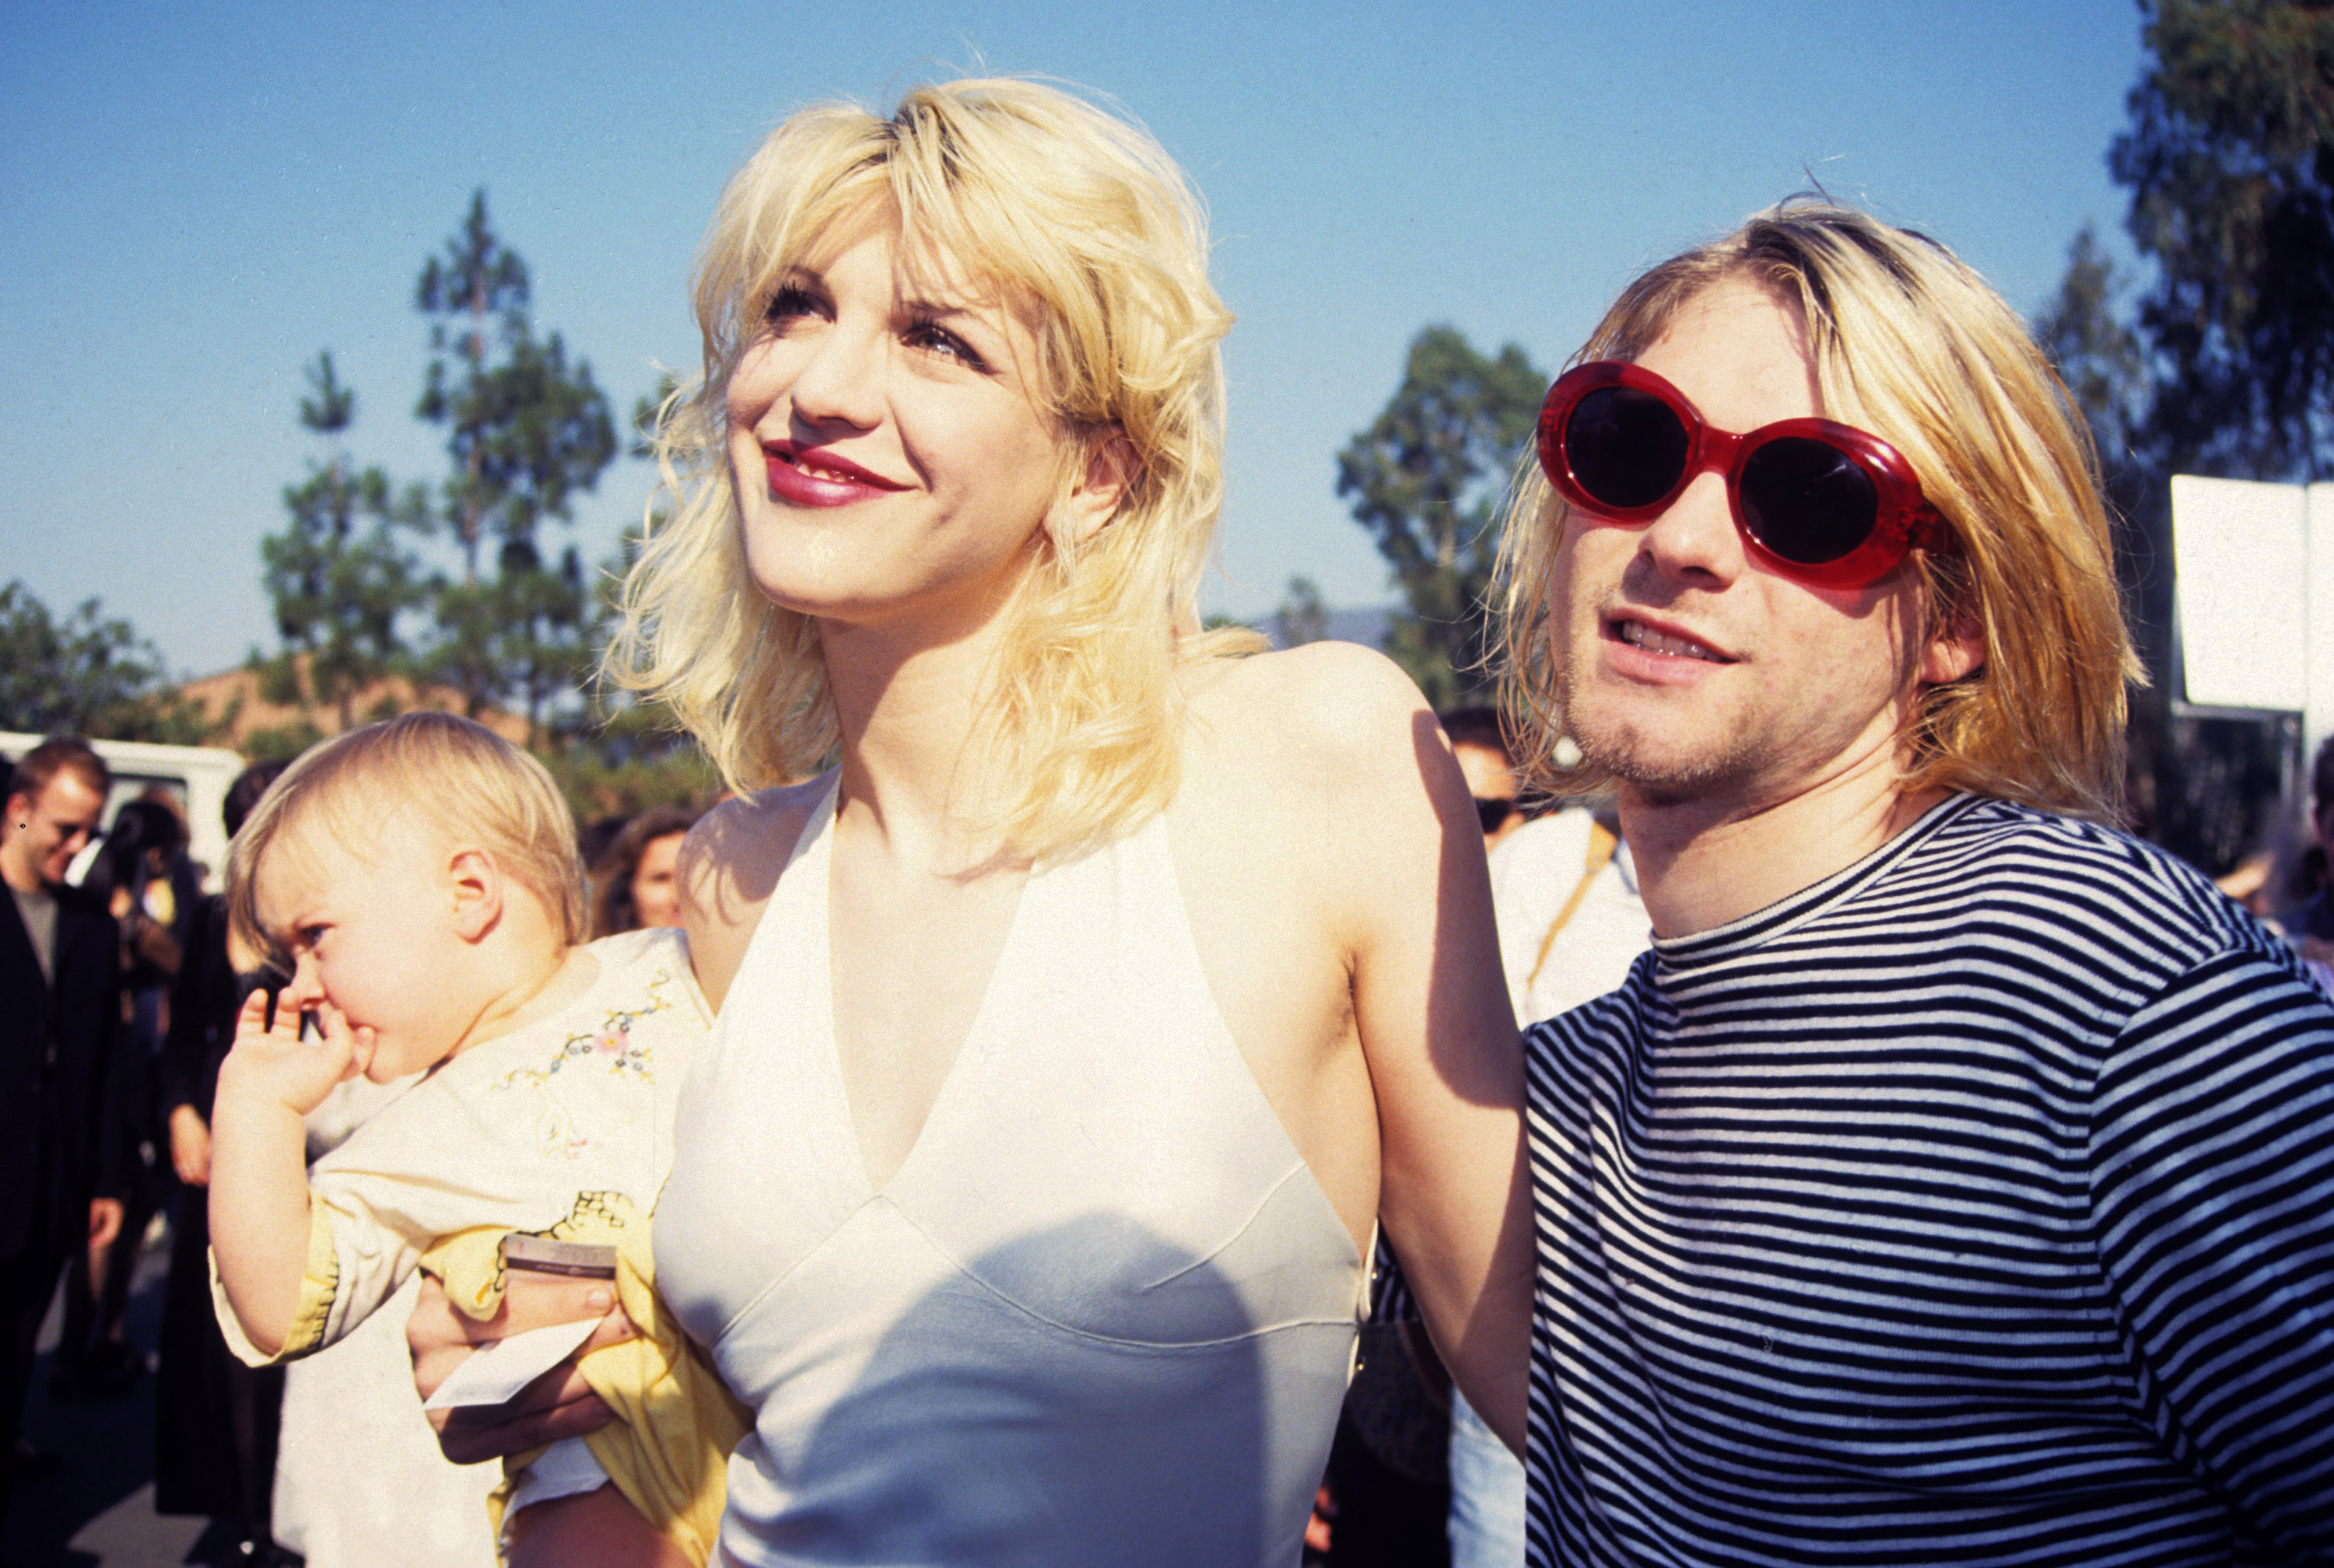 Kurt Cobain y Courtney Love en 1993 con Frances, su hija, en brazos. Poco después se produciría una gran conmoción con la revelación de que Courtney se drogaba con heroína durante el embarazo.  (Photo by Terry McGinnis/WireImage)